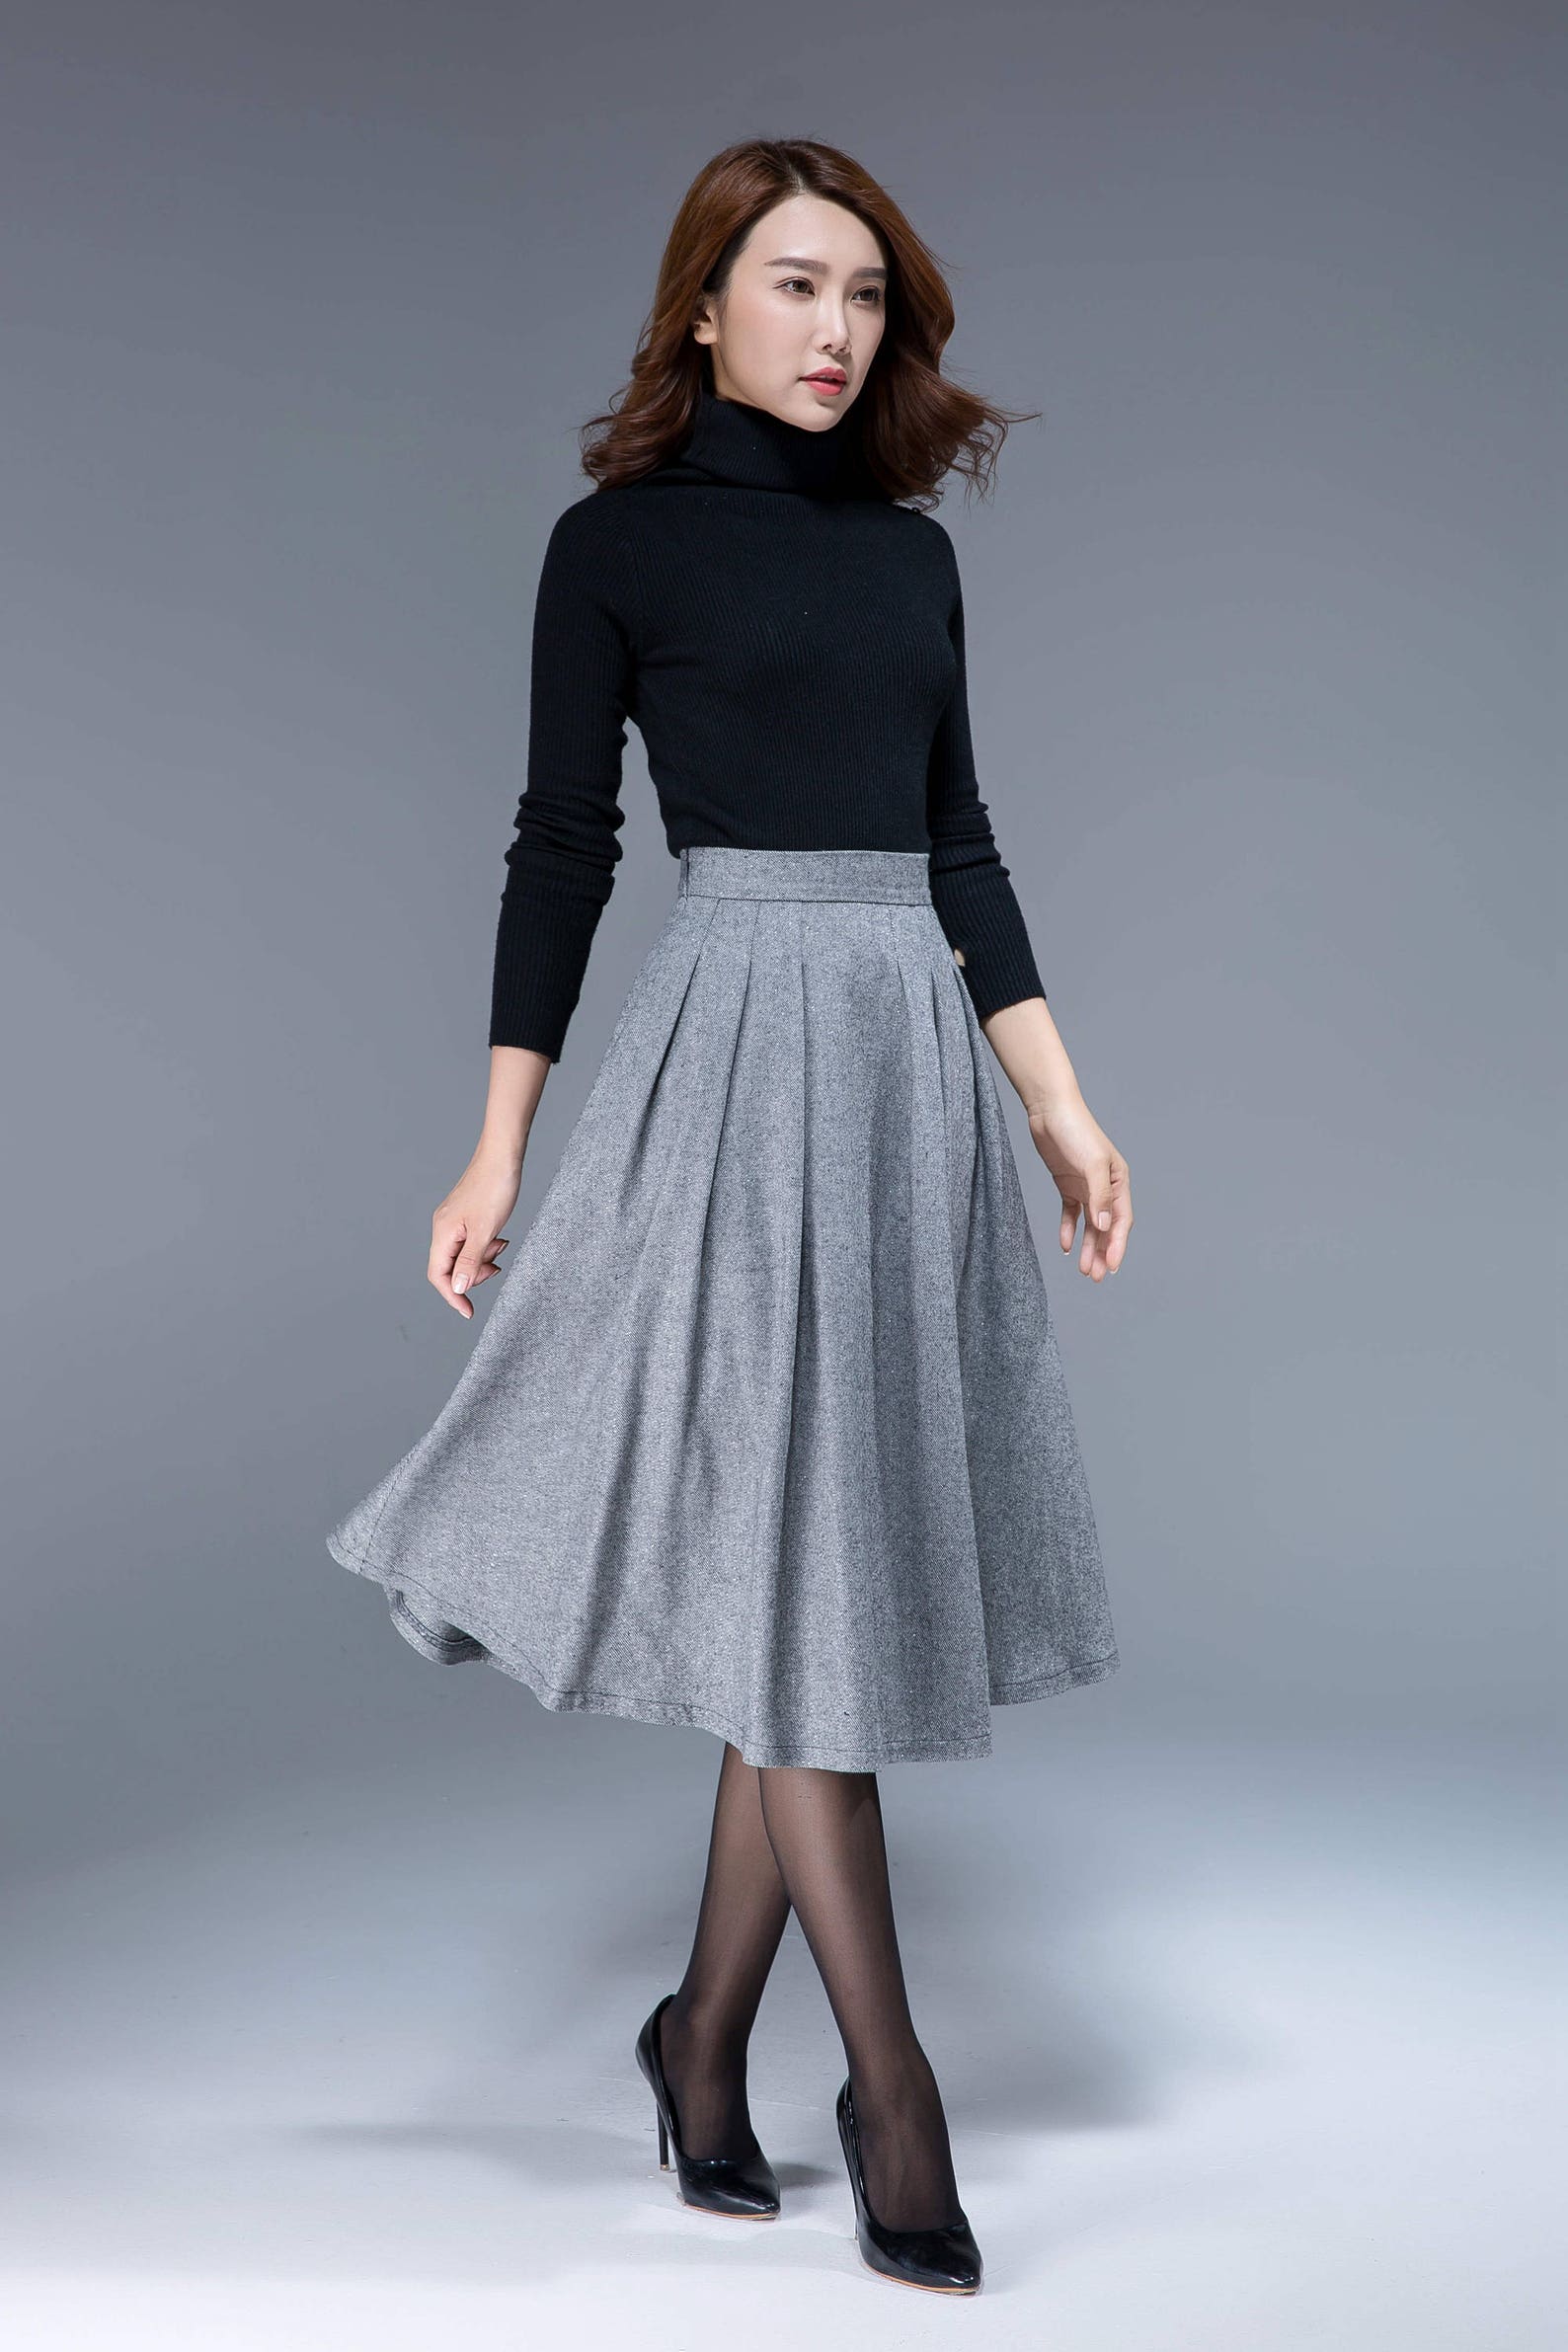 Pleated midi skirt Wool skirt Winter skirt Knee length | Etsy